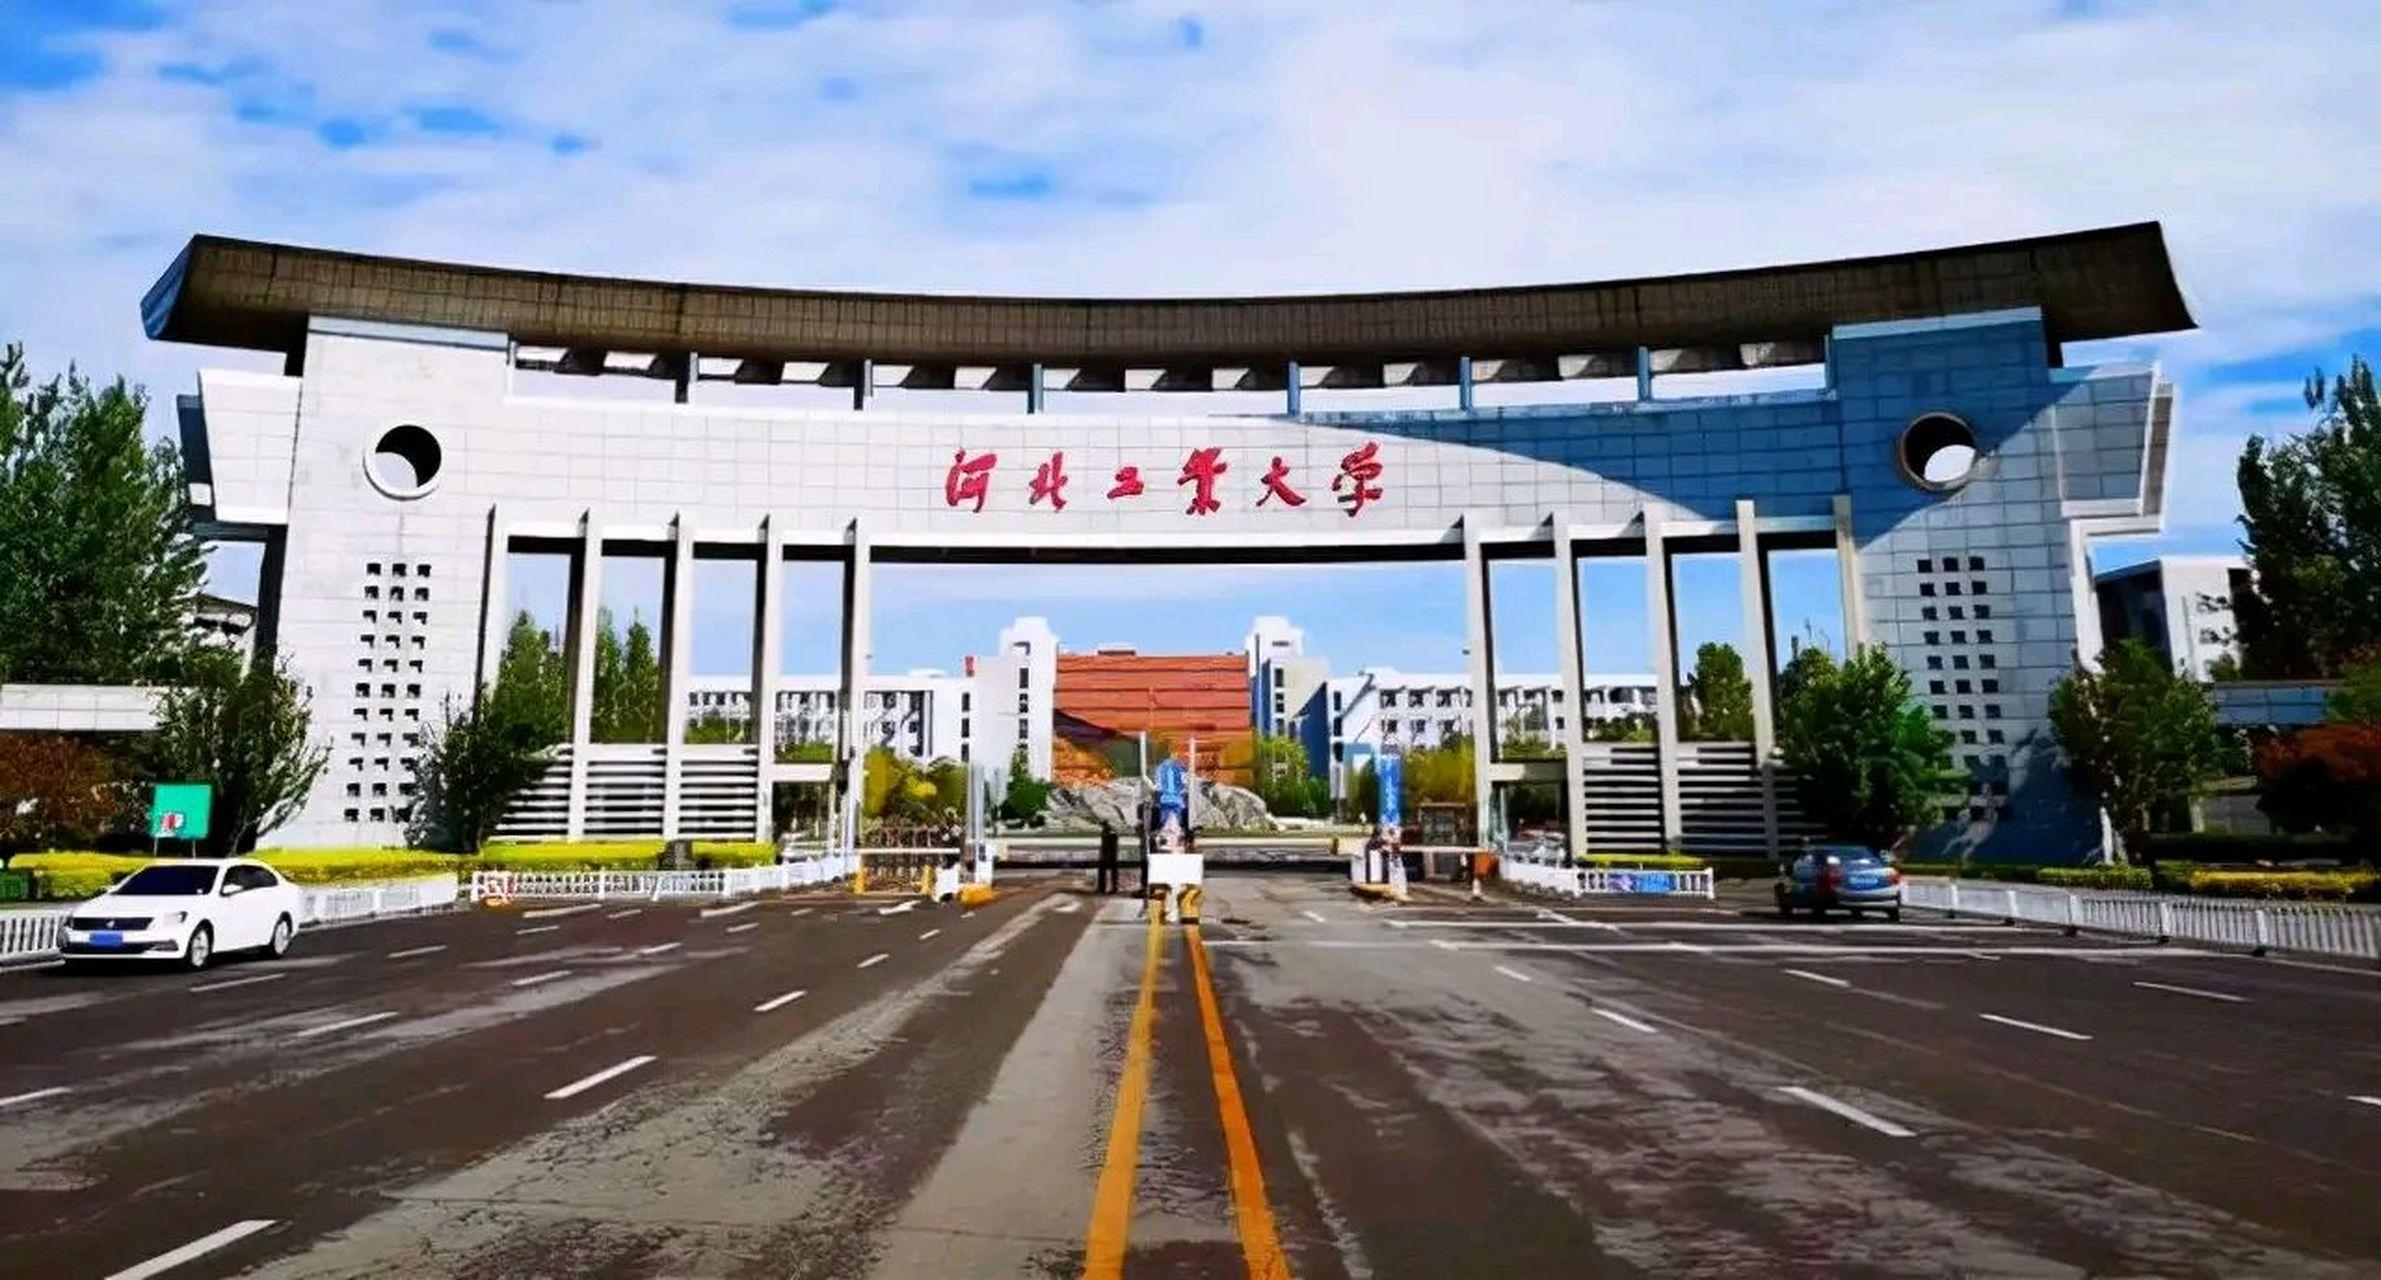 河北工业大学同等学力人员申请硕士学位